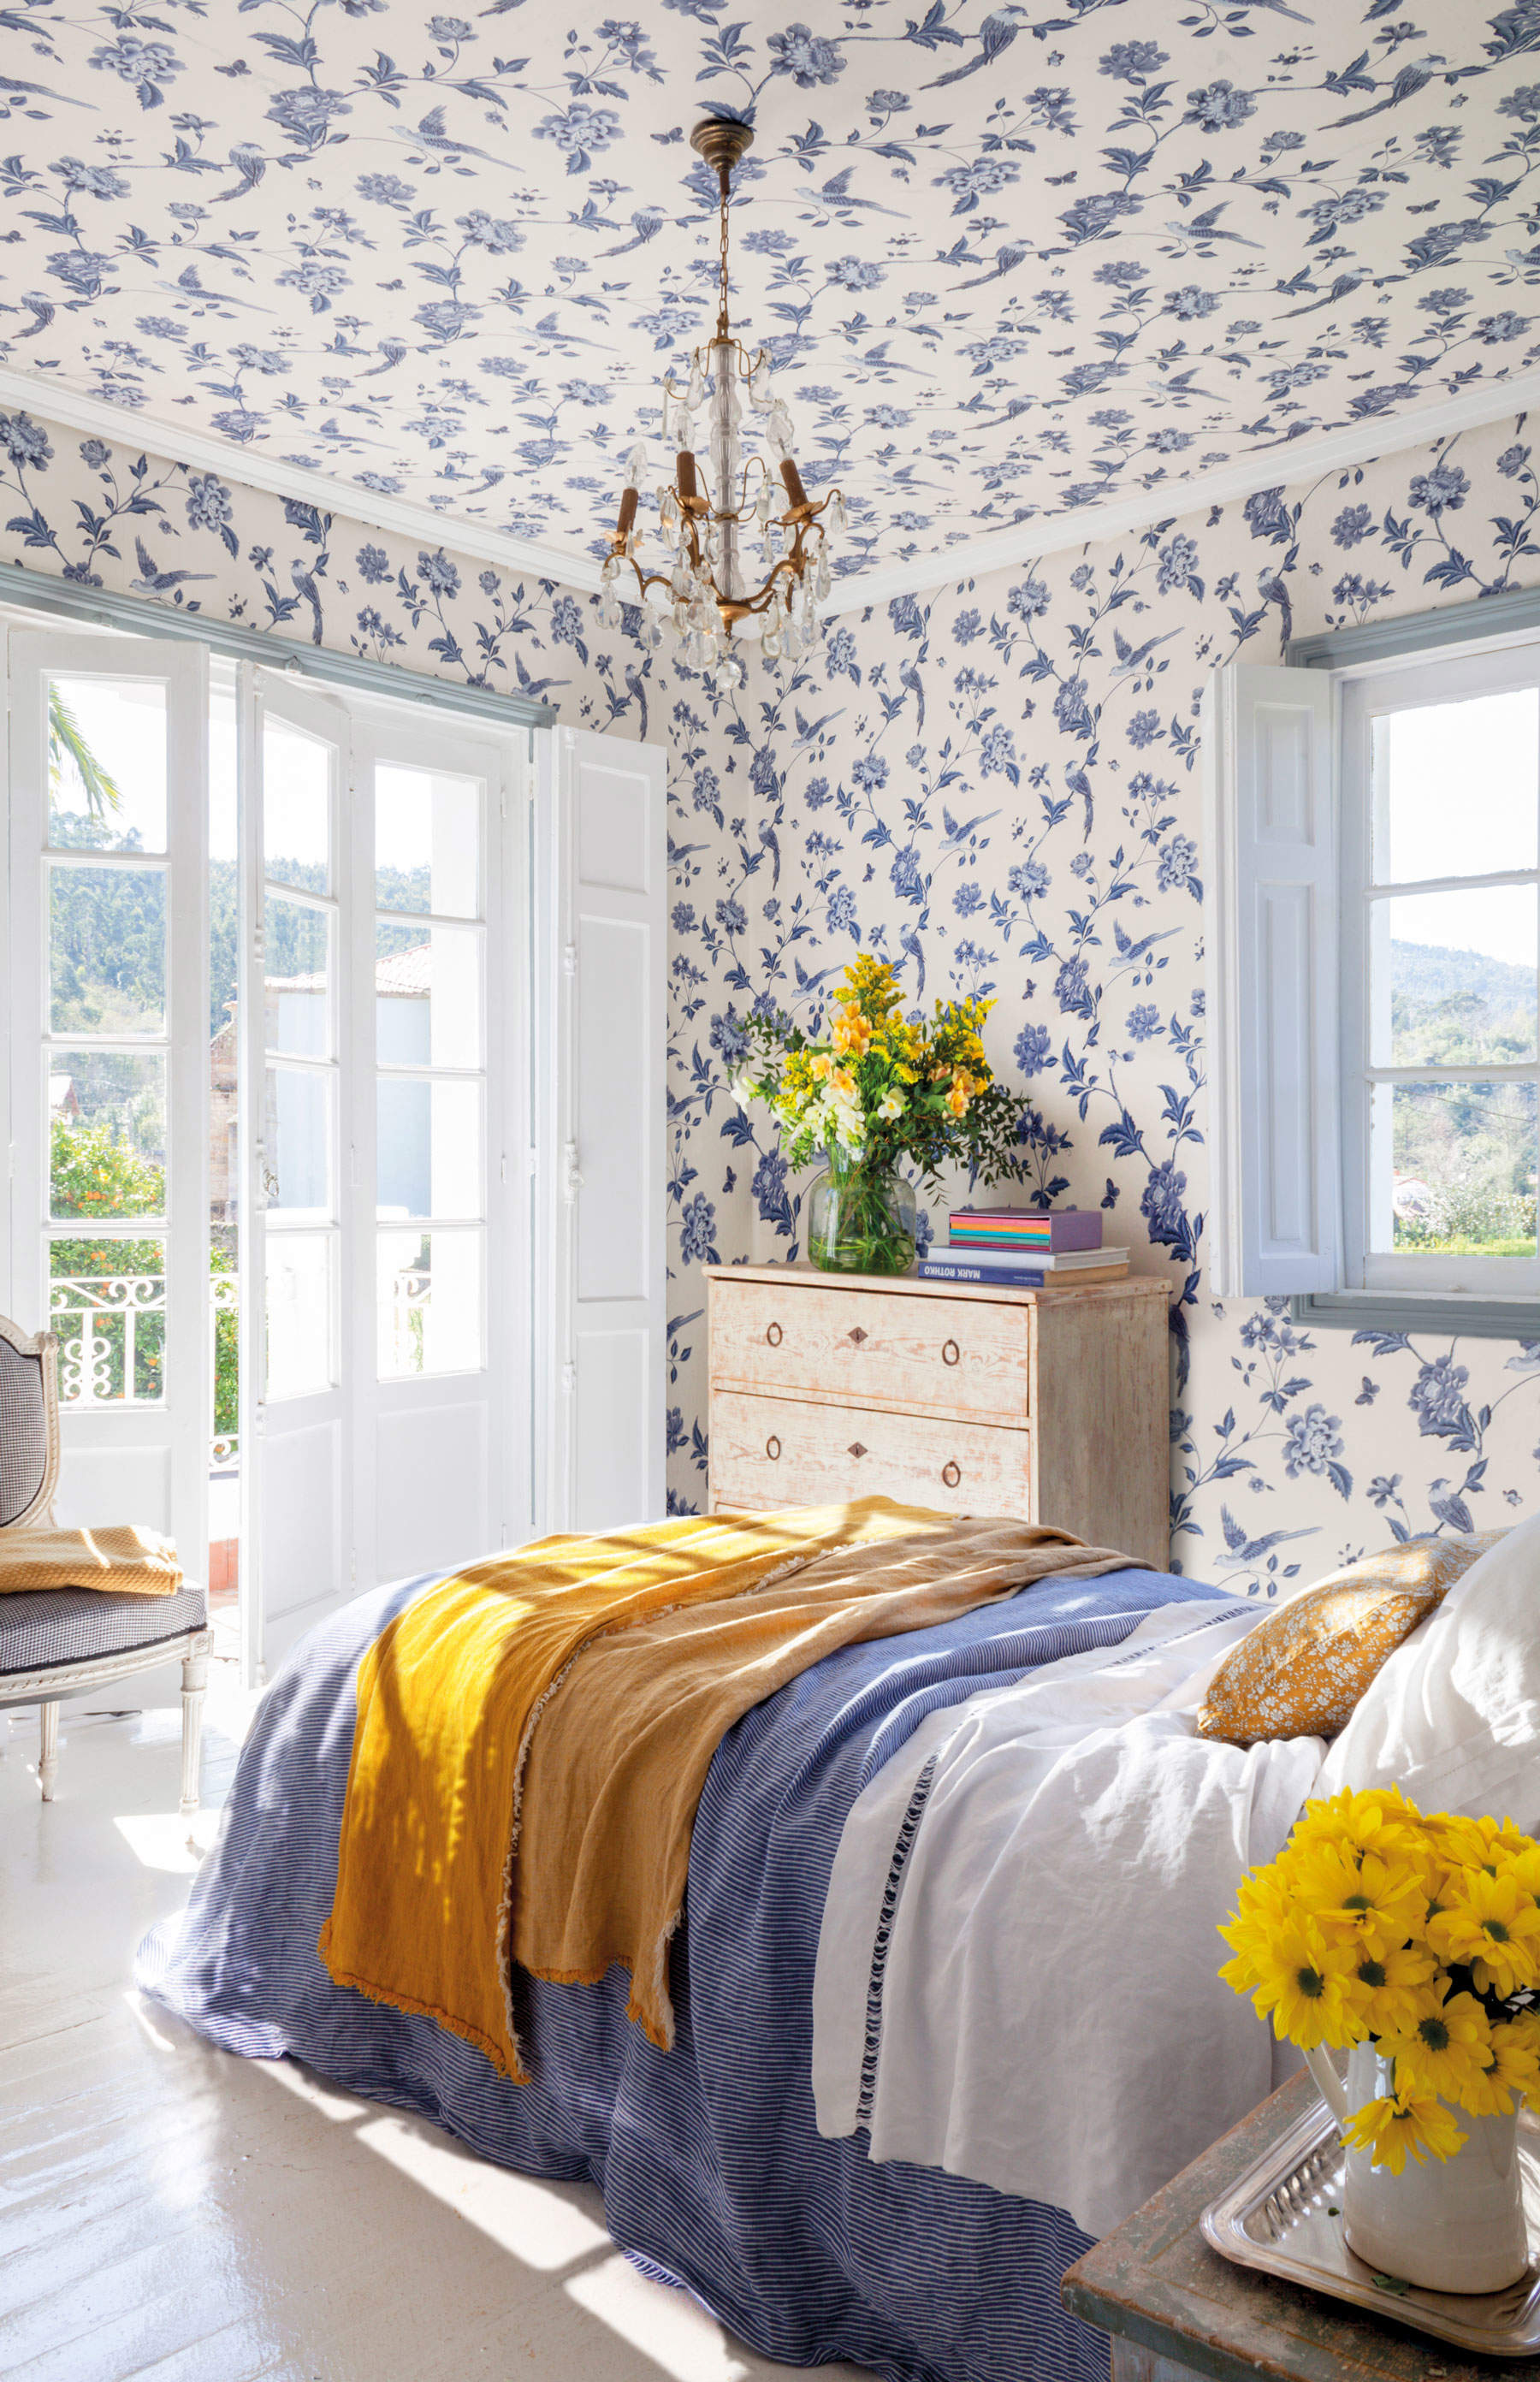 Dormitorio con papel pintado en paredes y techos azul.